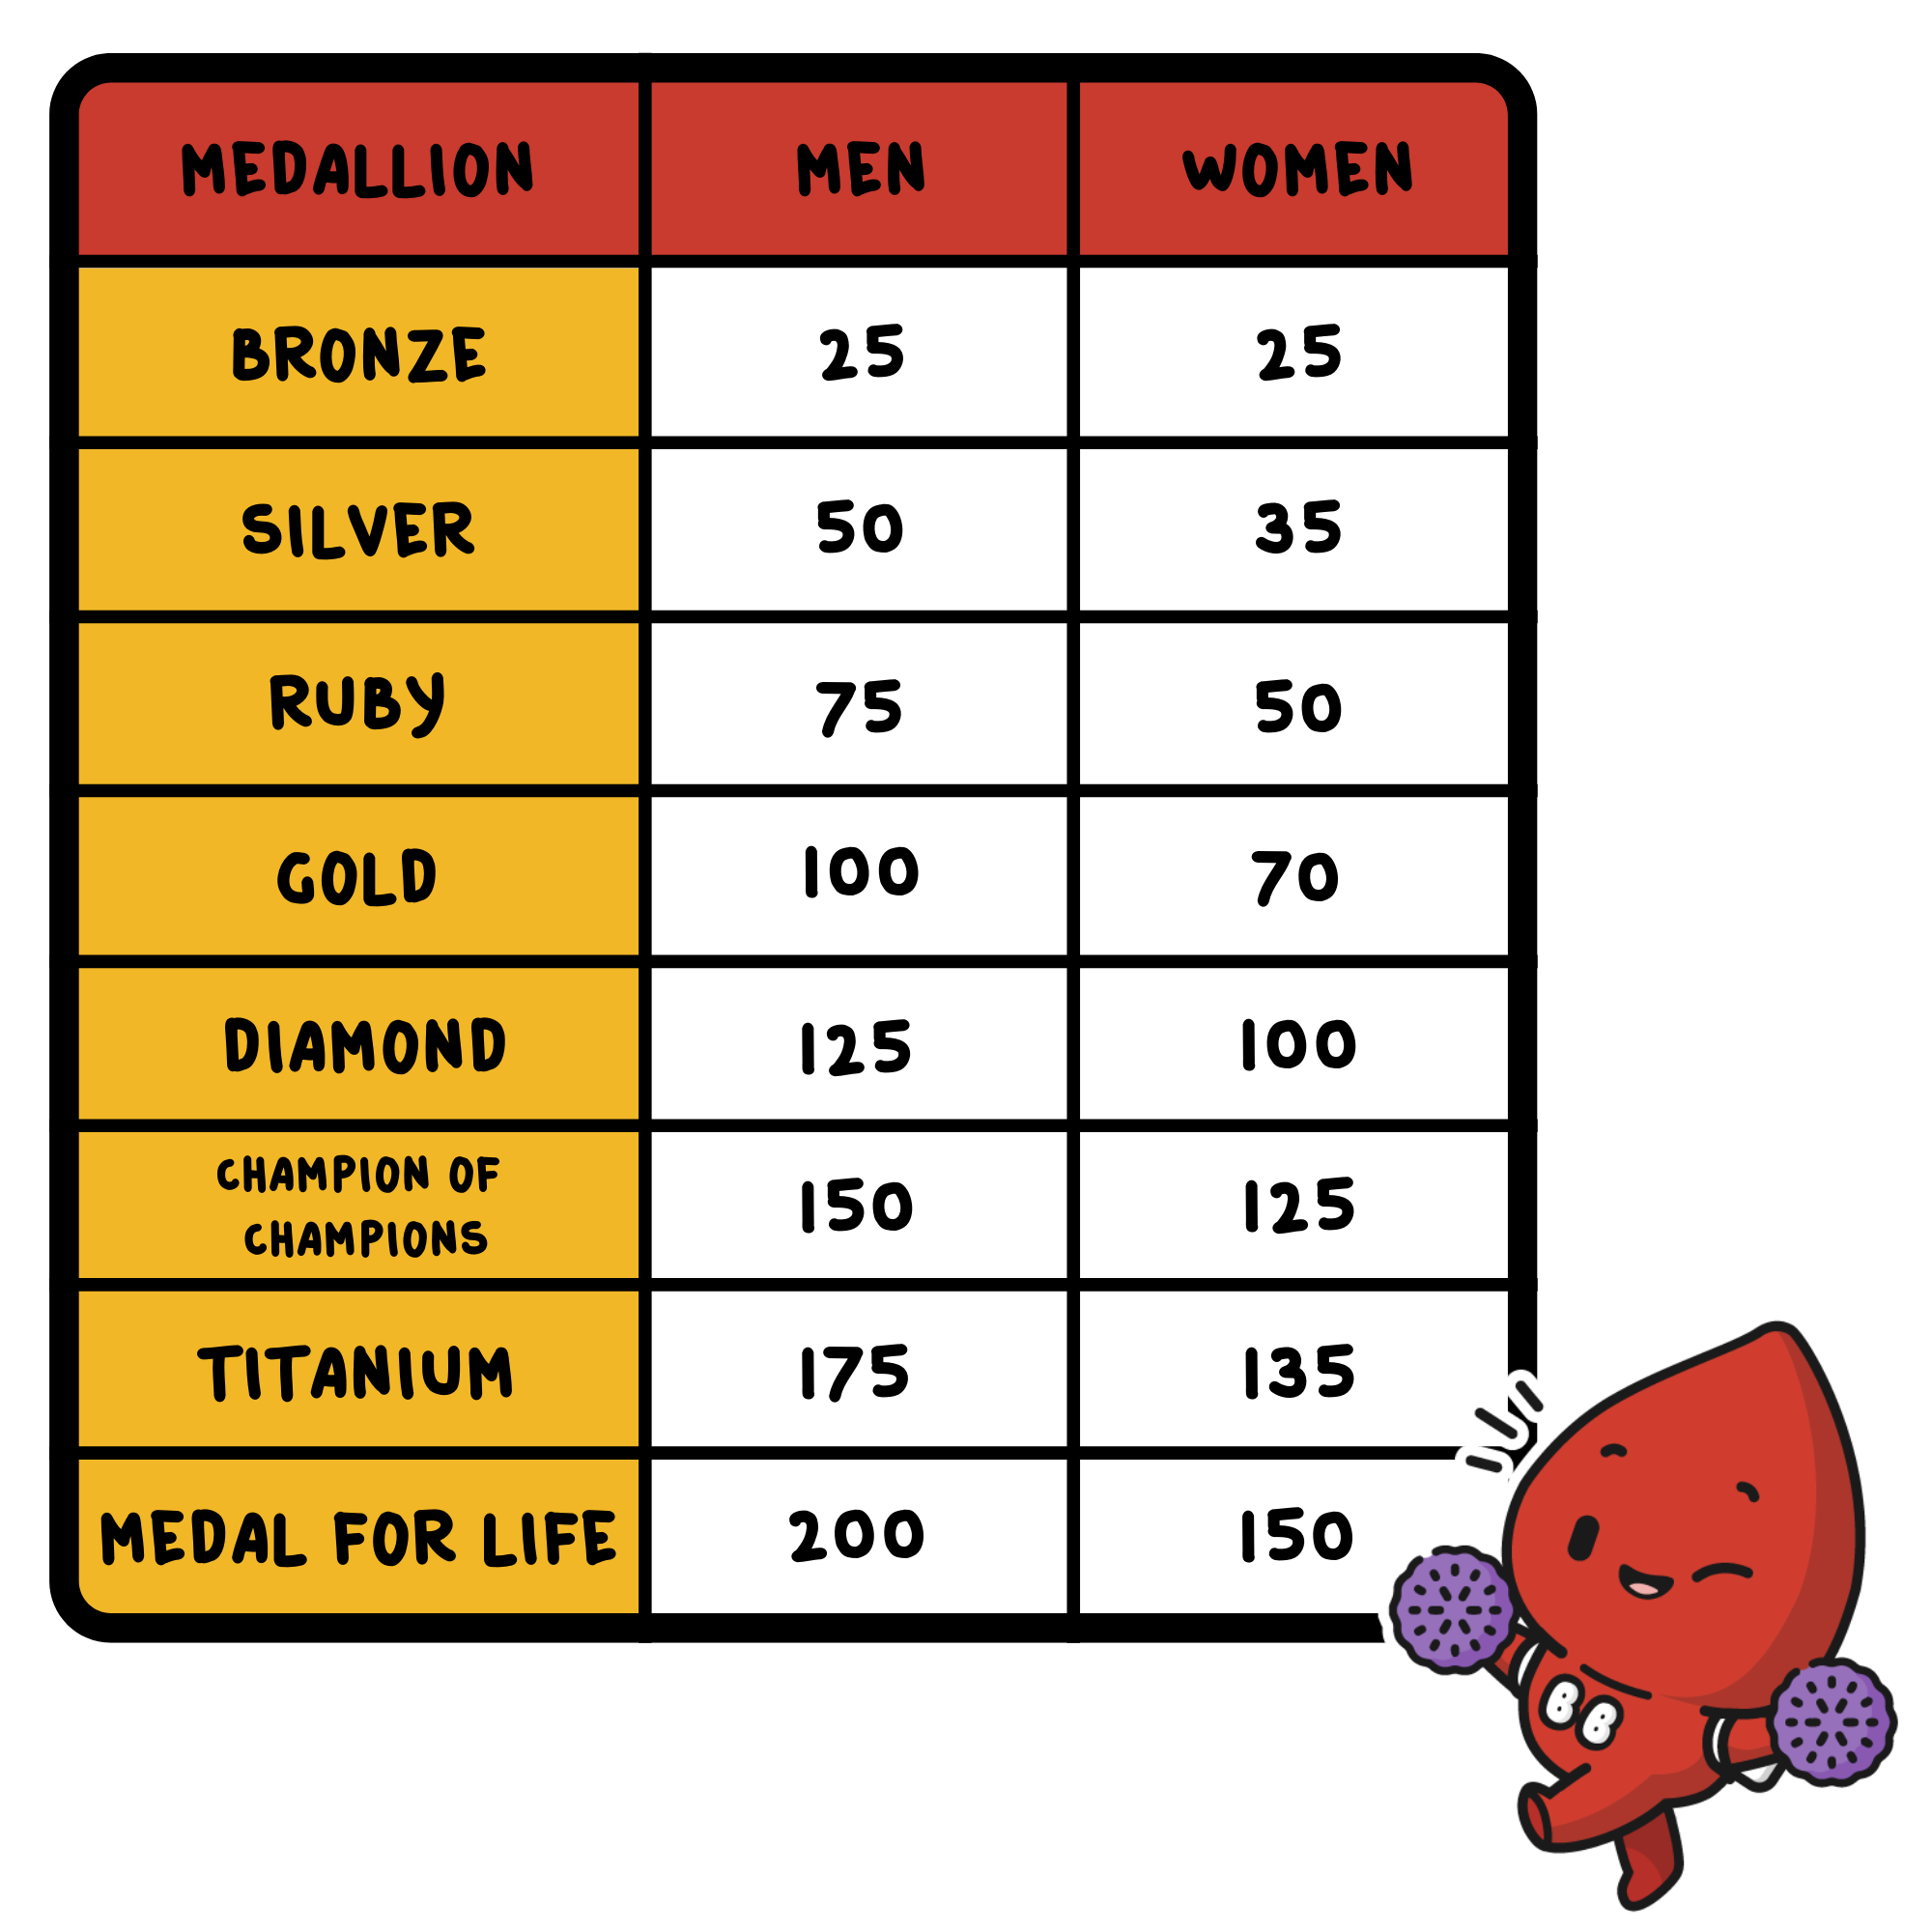 Medallion list